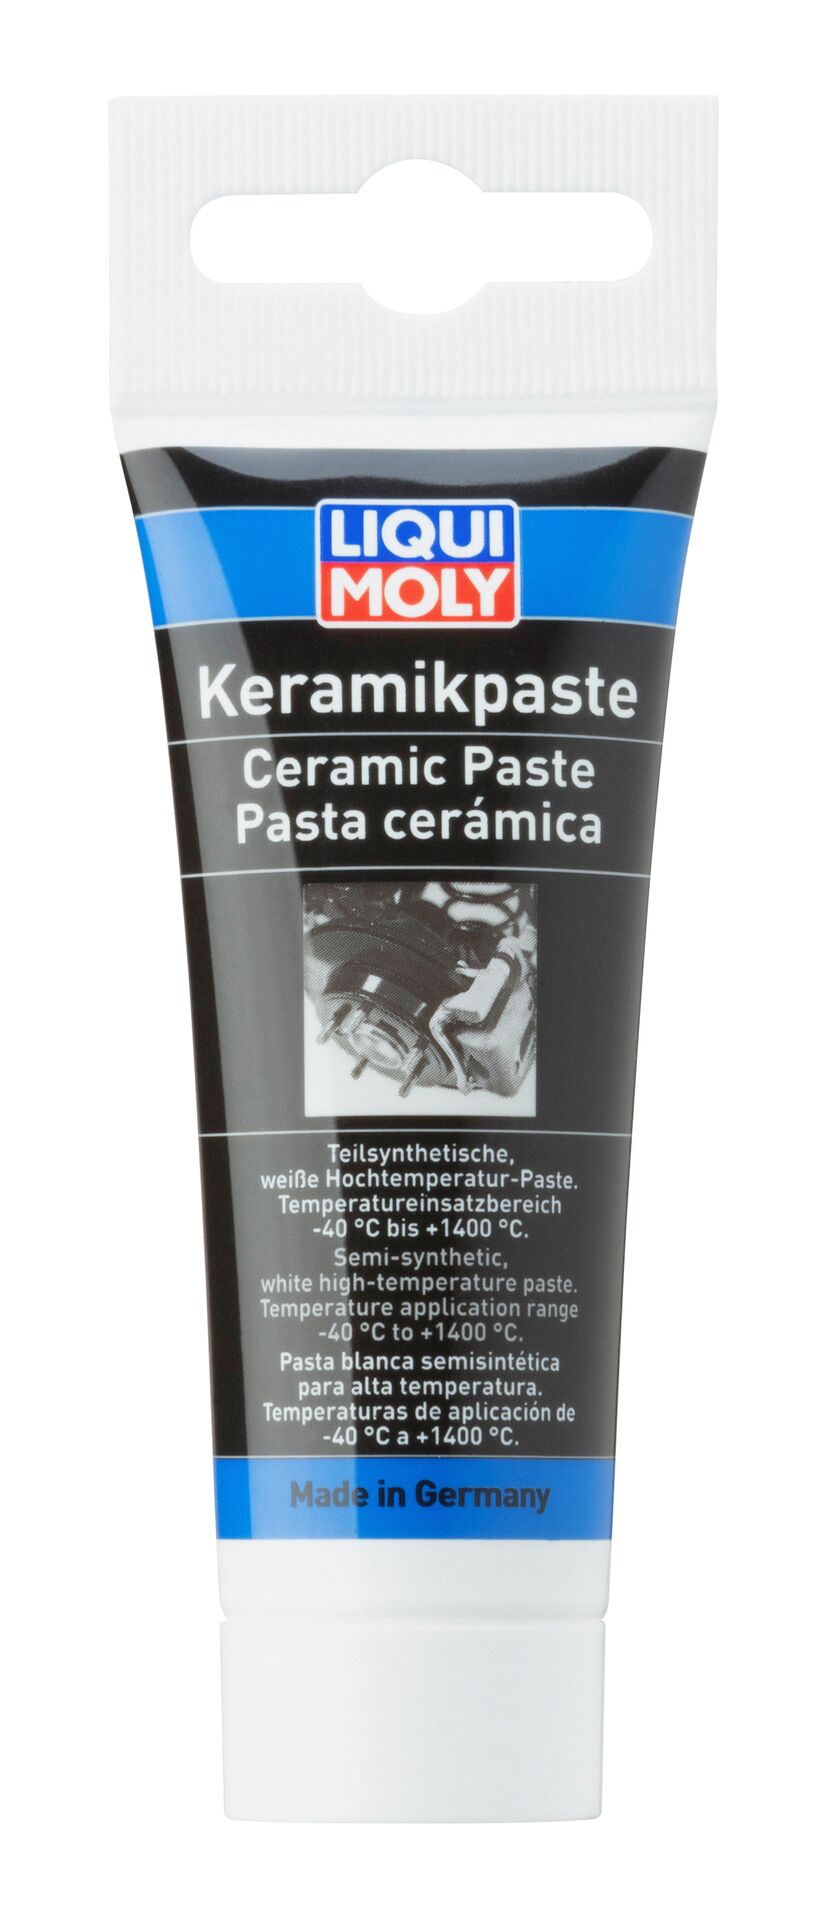 Liqui Moly 50g Keramik-Paste weiße teilsynthetische Universalpaste Schutz